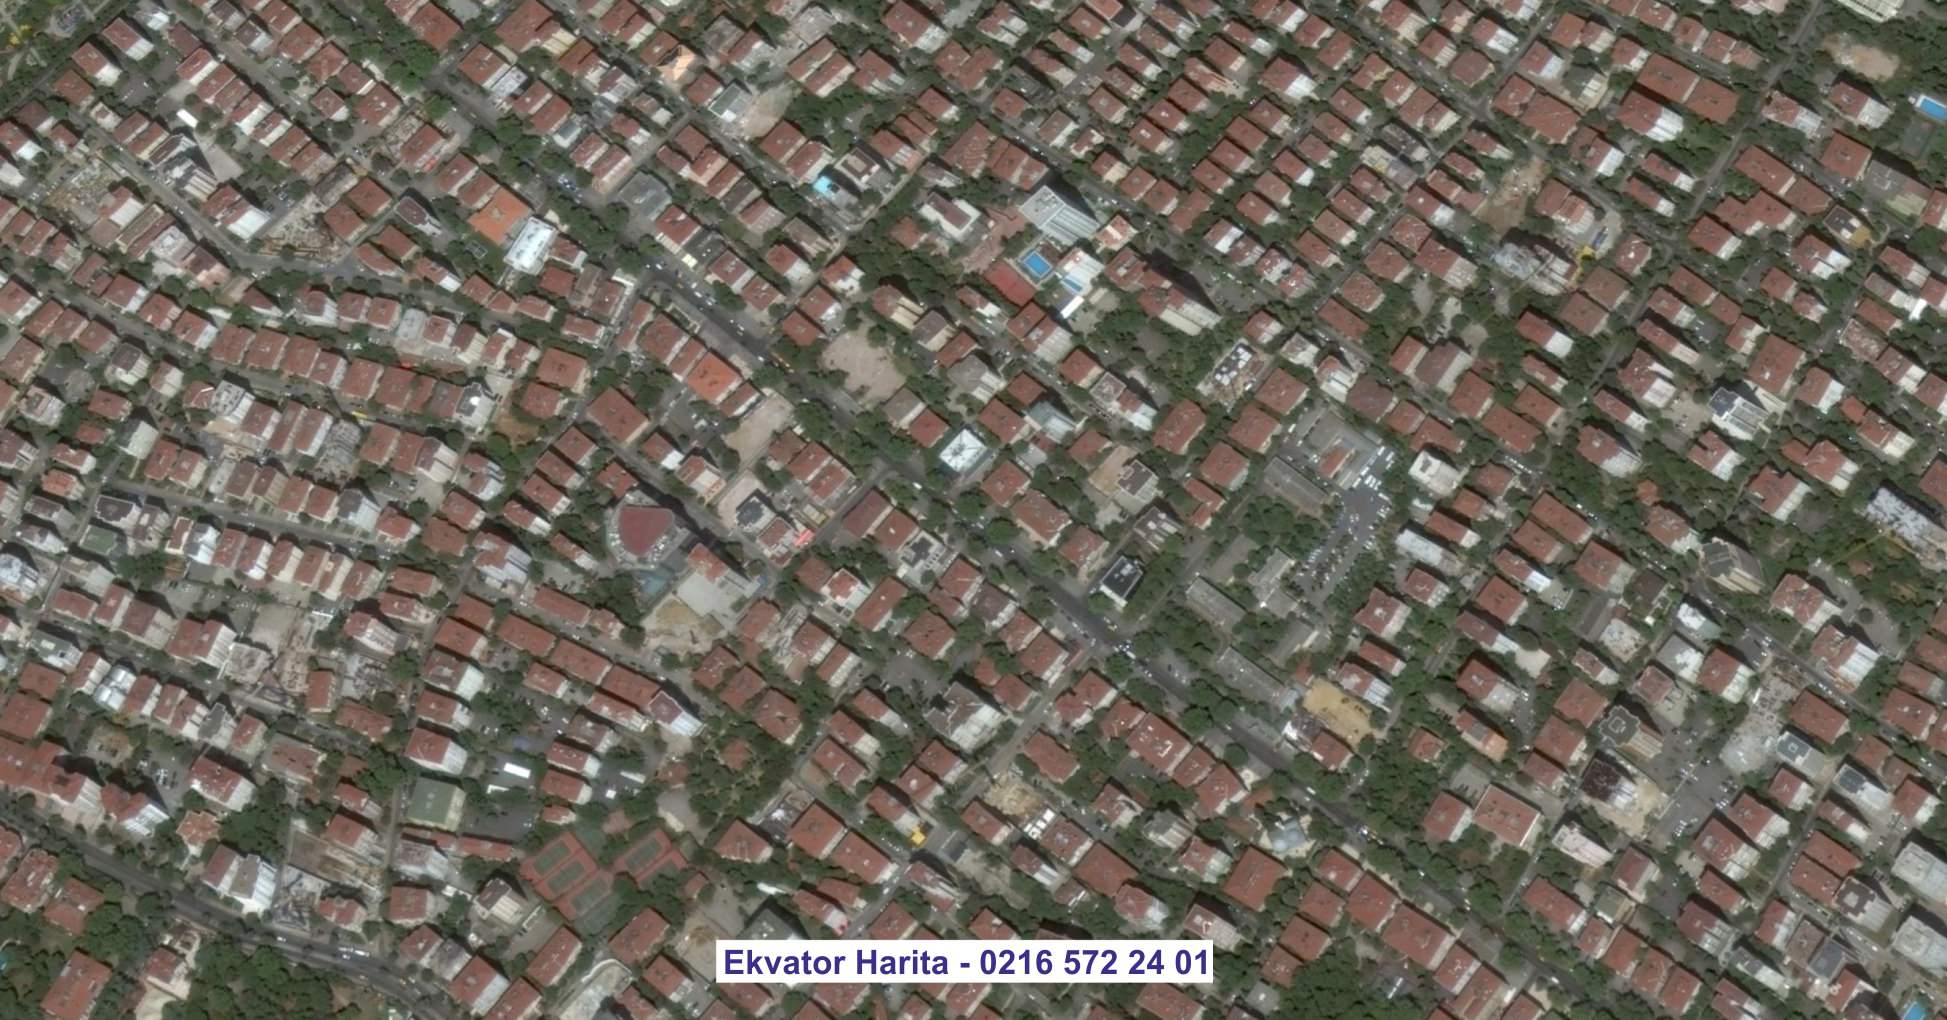 Kahramanmaraş Uydu Görüntüsü Örnek Fotoğrafı